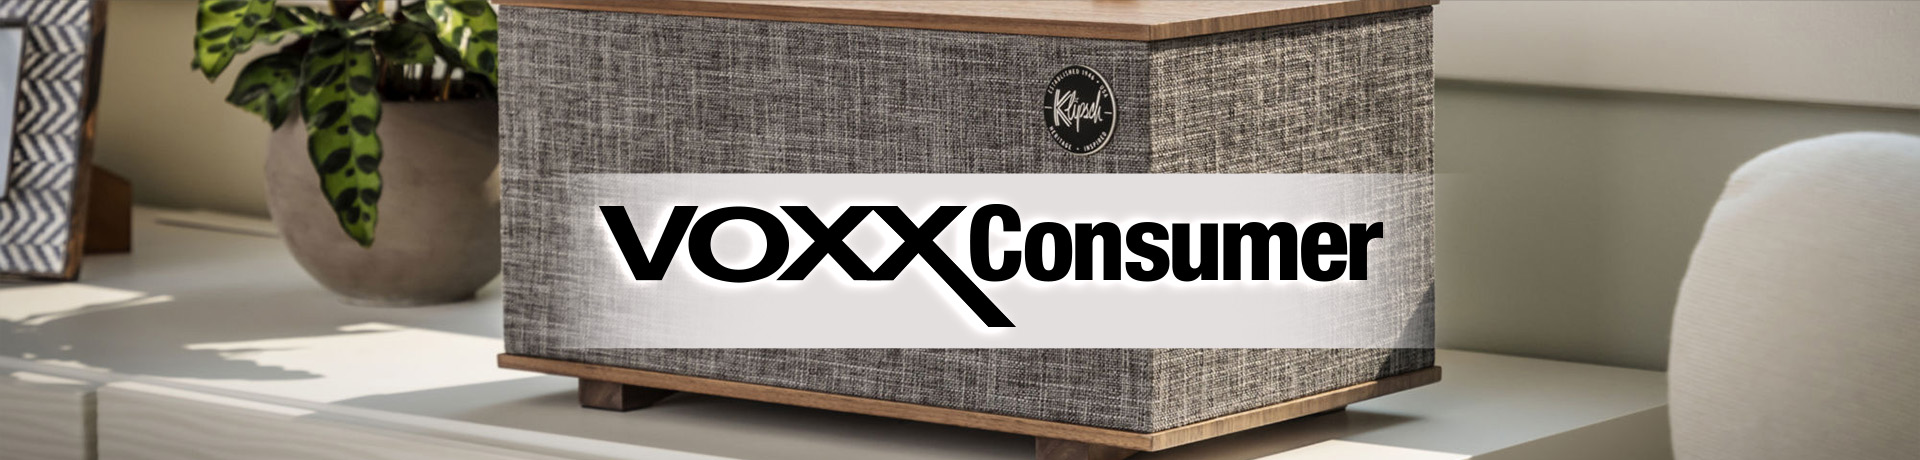 VOXX Consumer